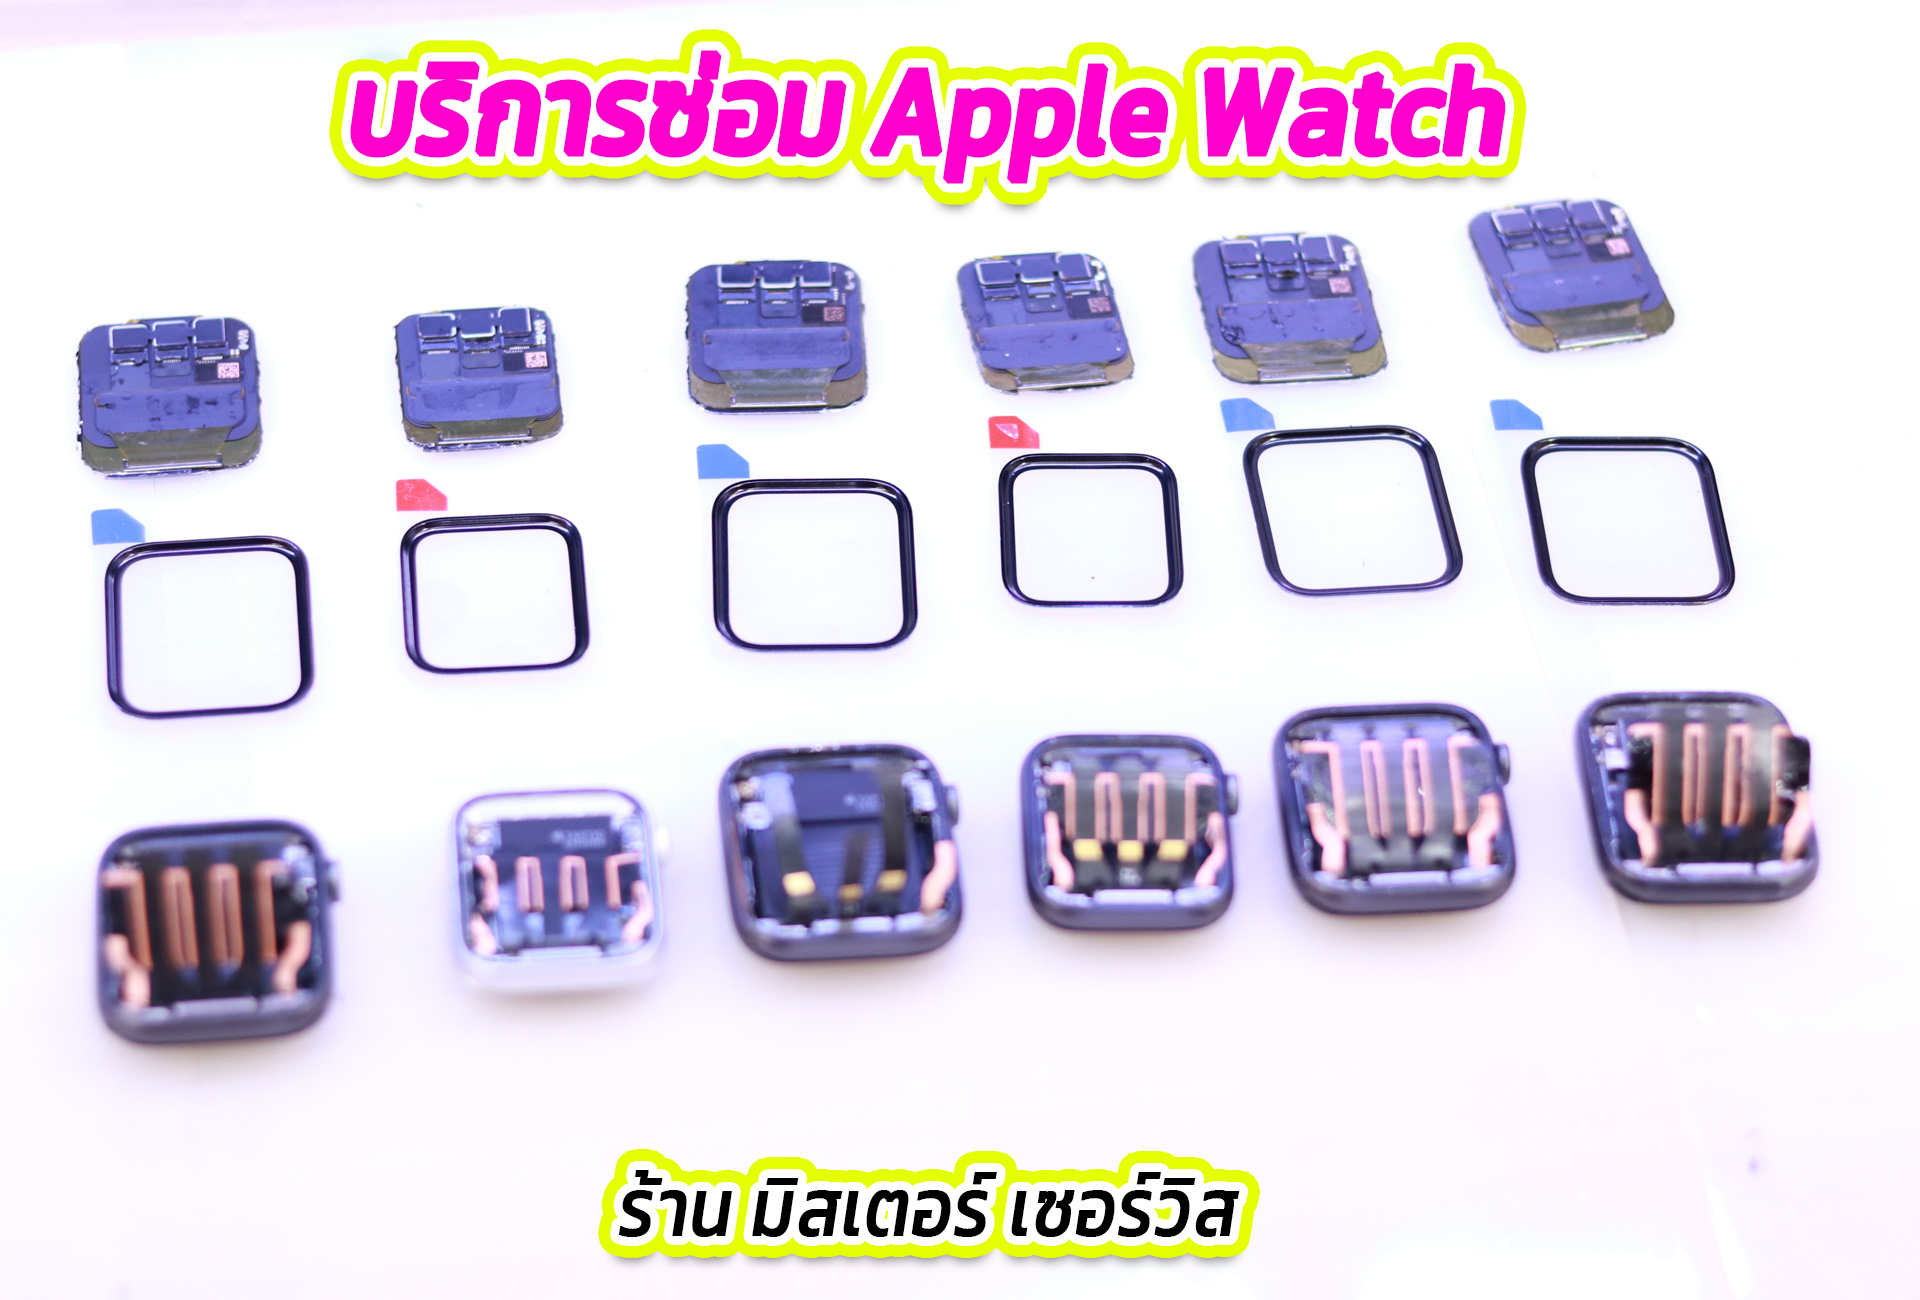 ซ่อม Apple Watch พิษณุโลก